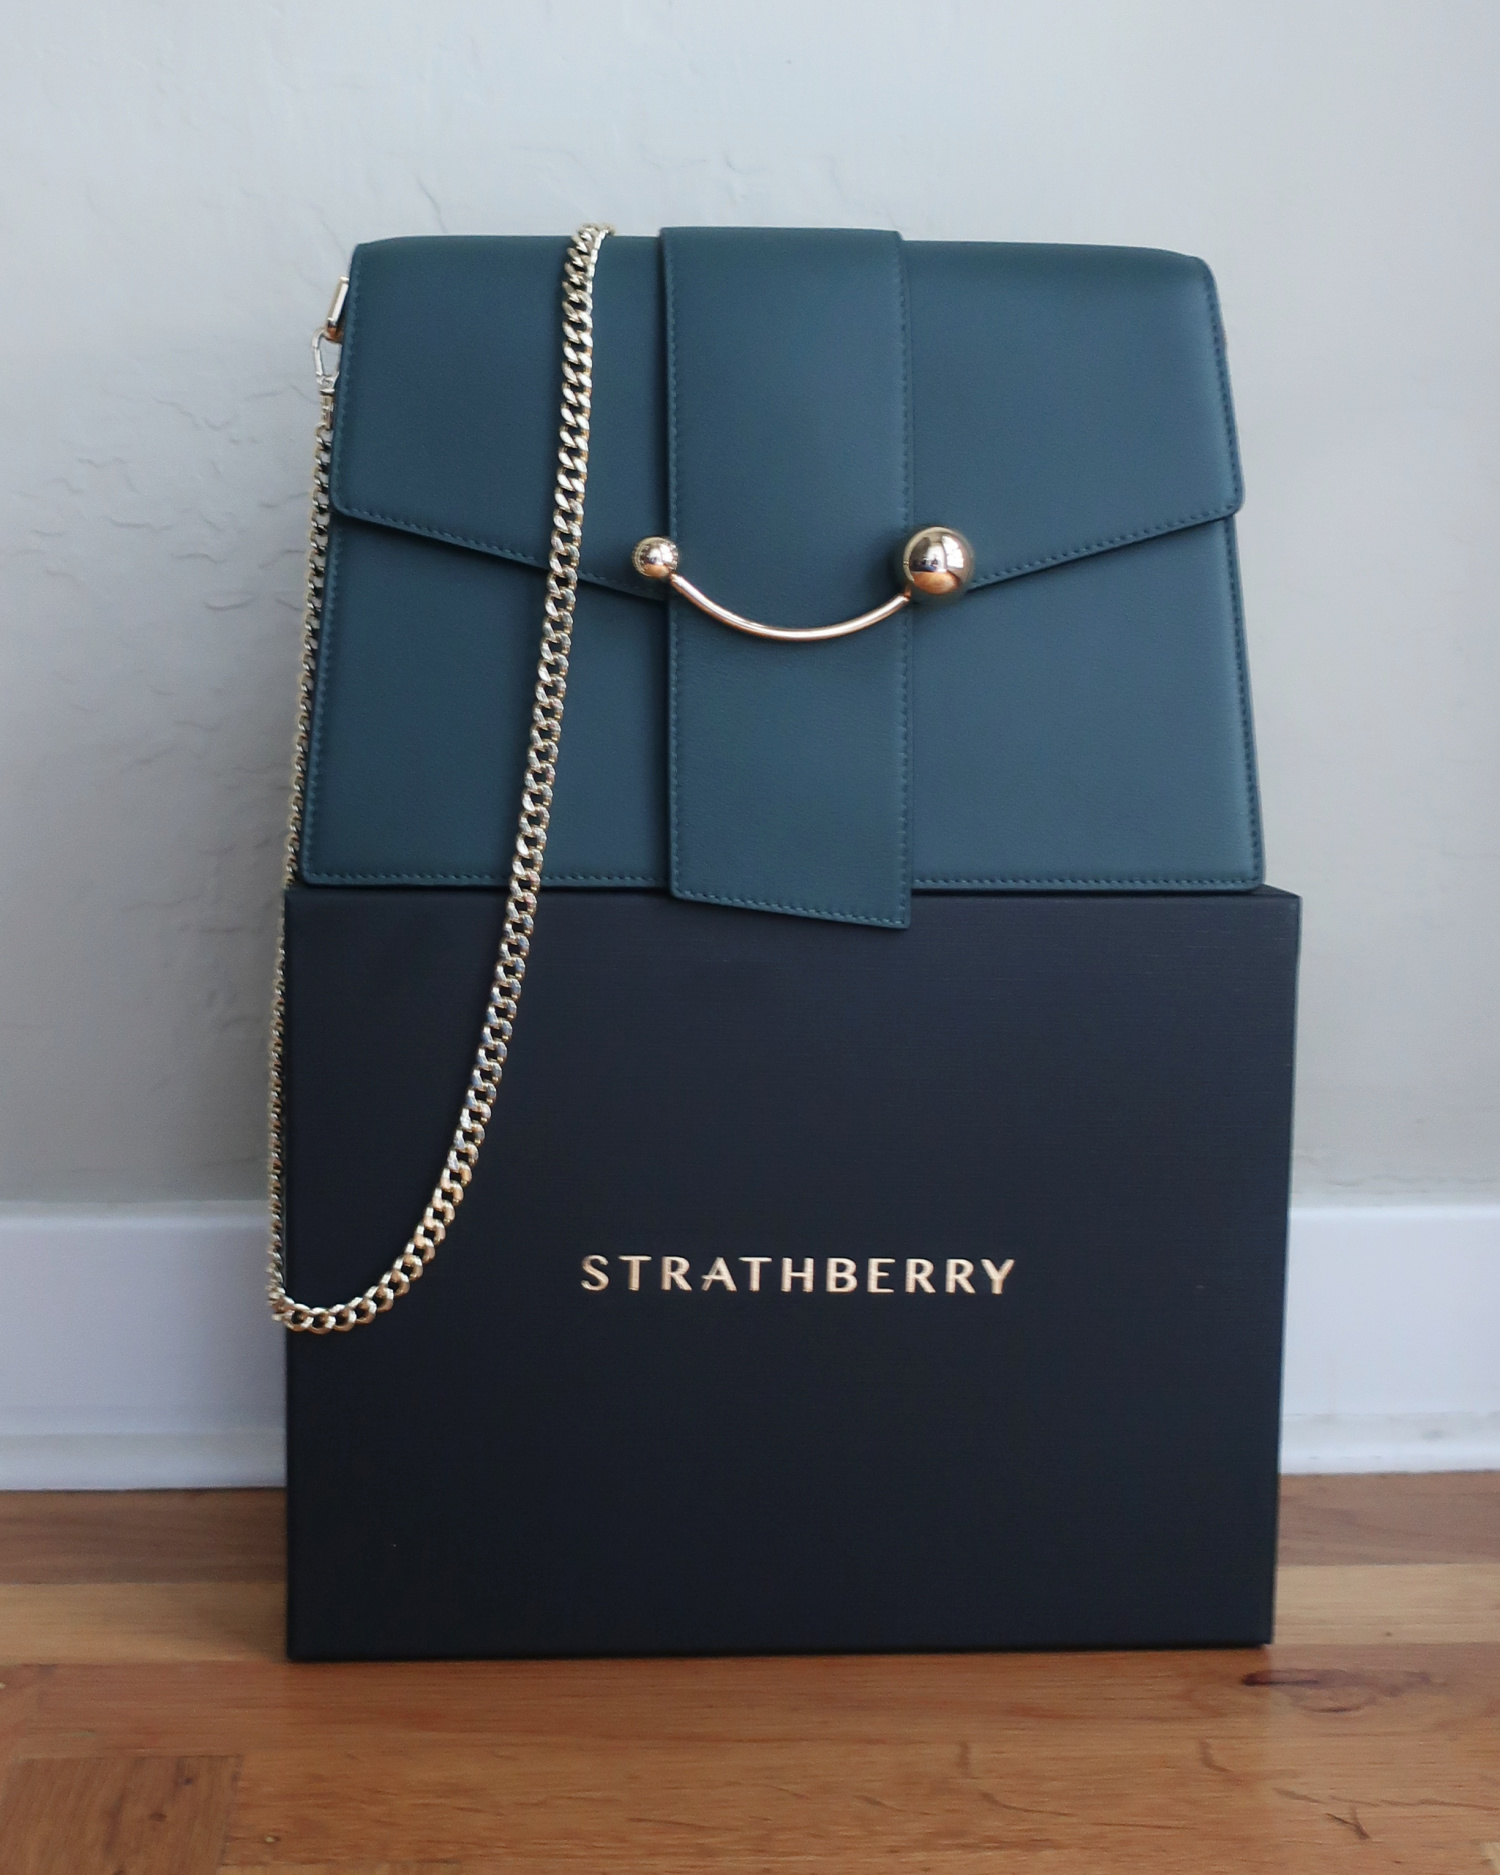 Strathberry Crescent Shoulder Bag in Bottle Green Review